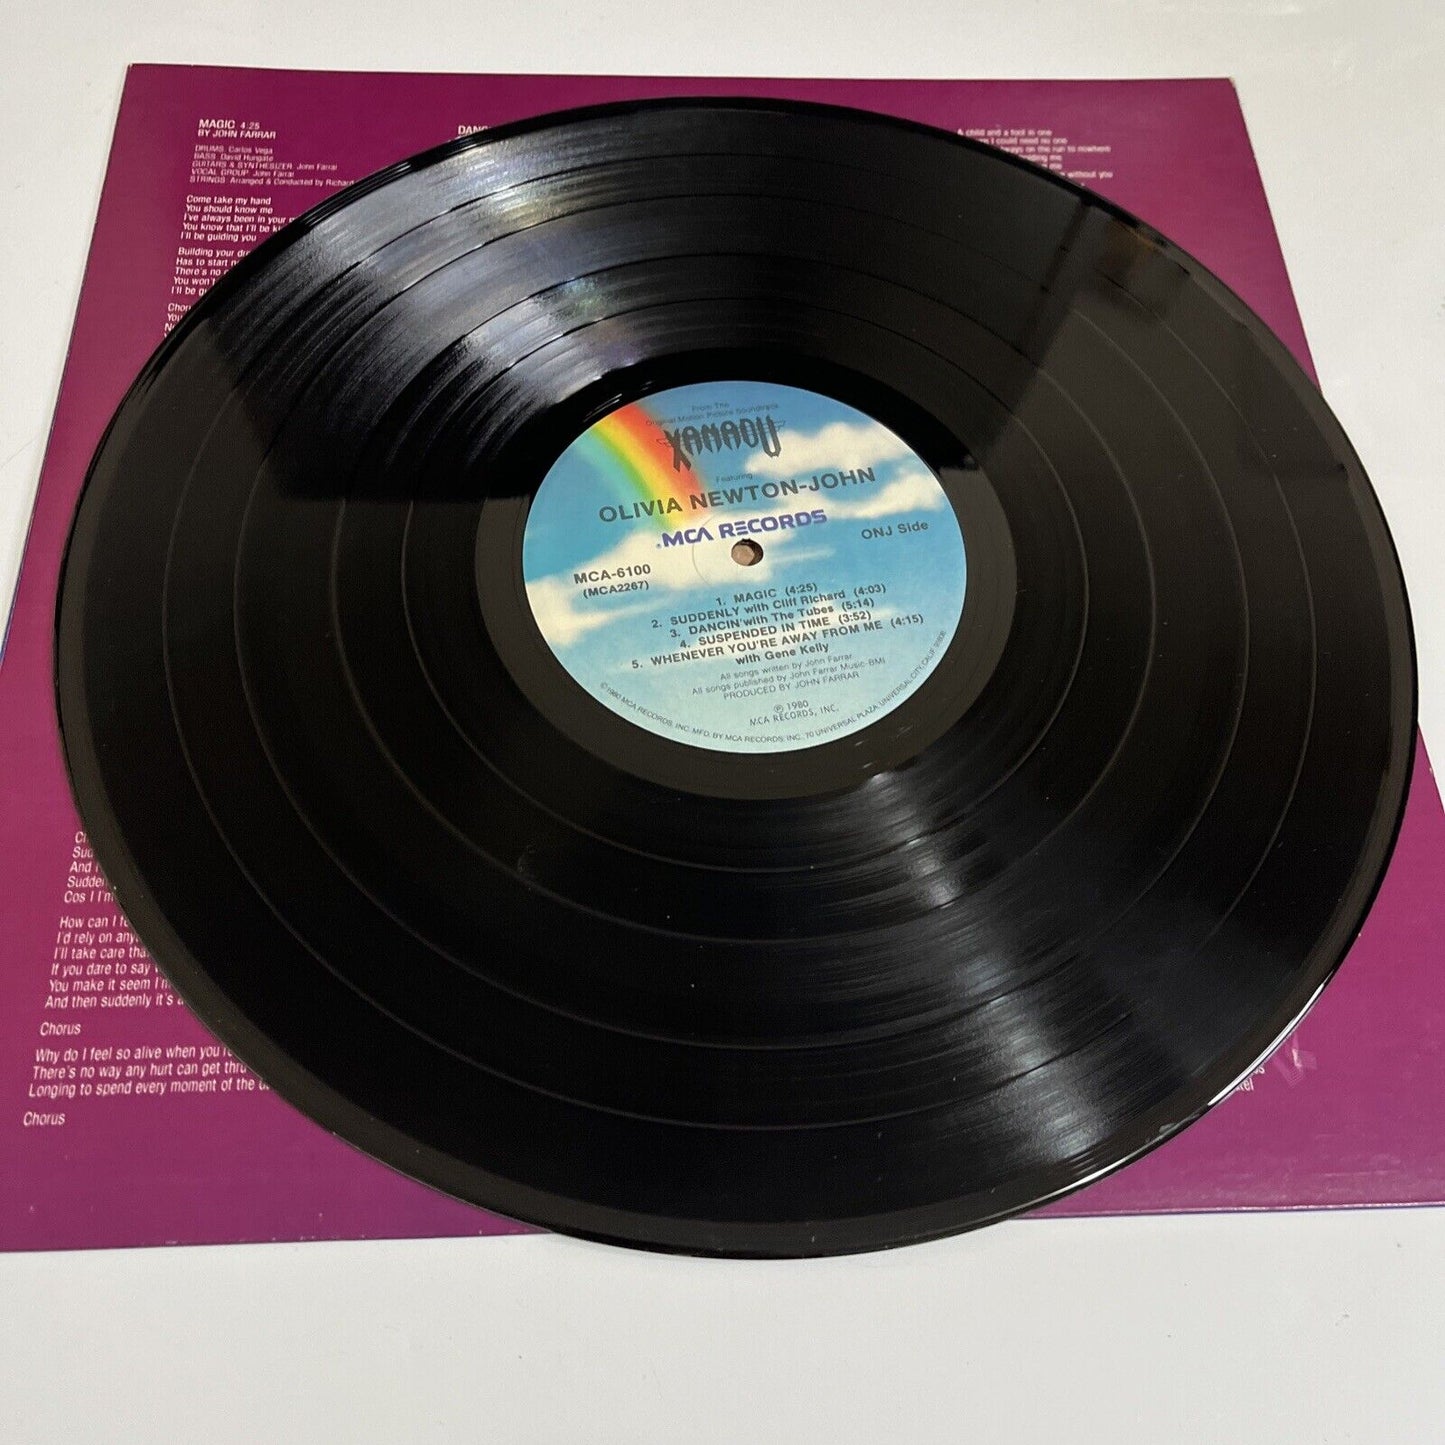 Xanadu Original Motion Picture Soundtrack 1980 LP Vinyl Gatefold MCA-6100